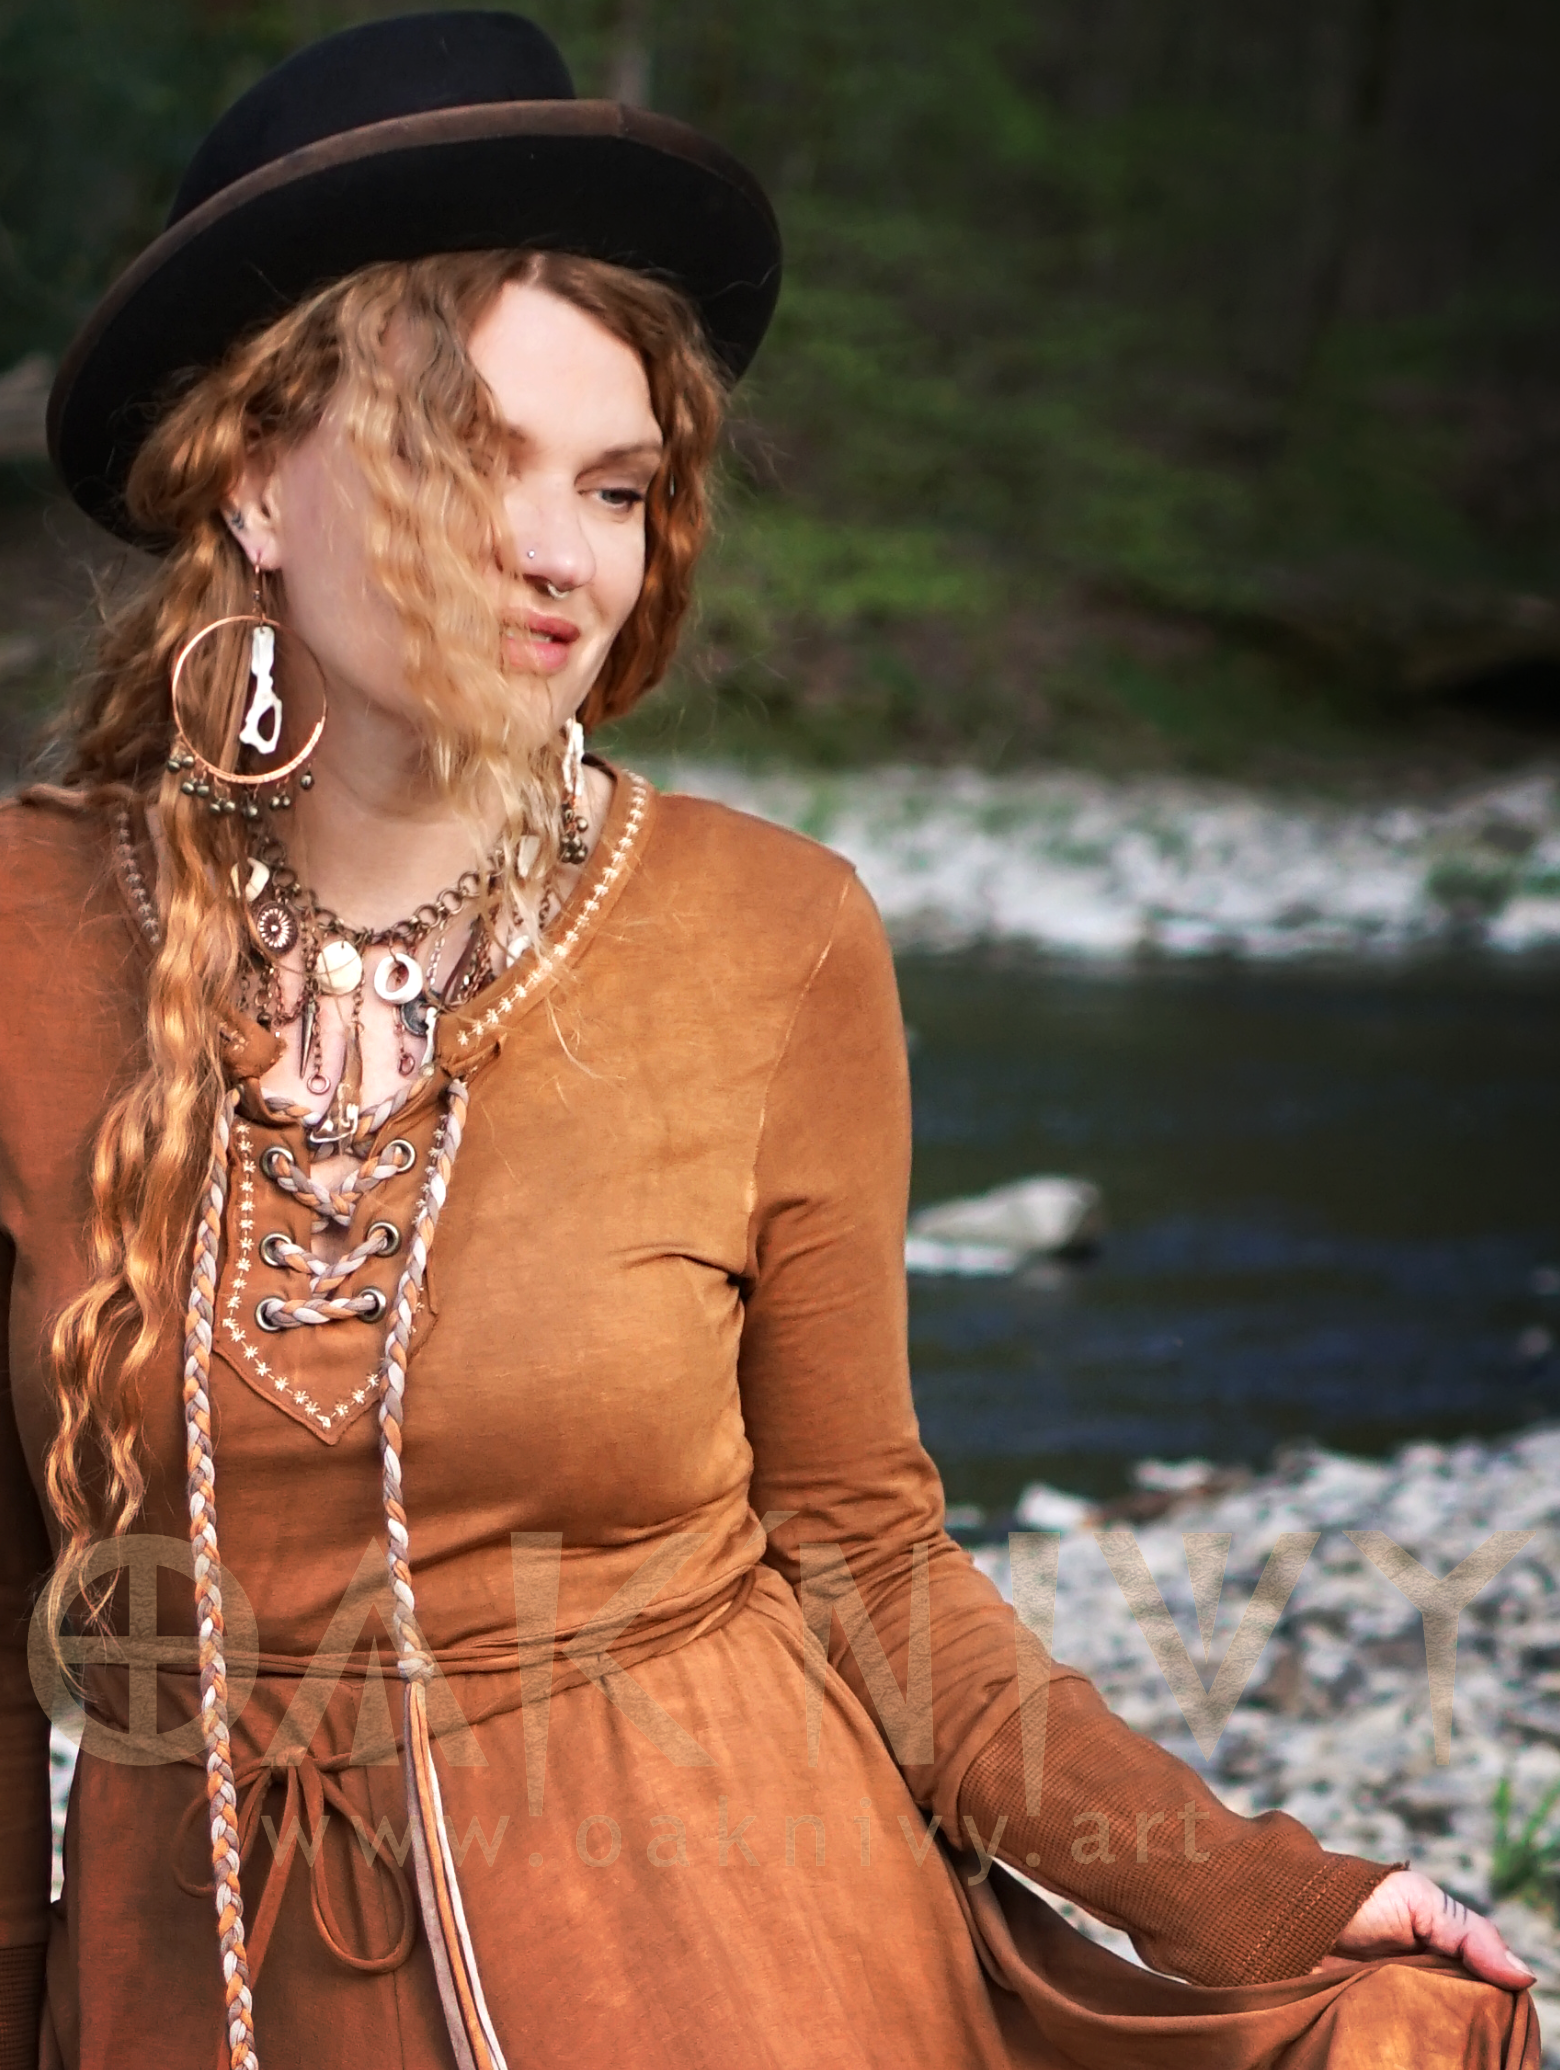 Ella Dress Folklore Print - Dusty Violett / Brown